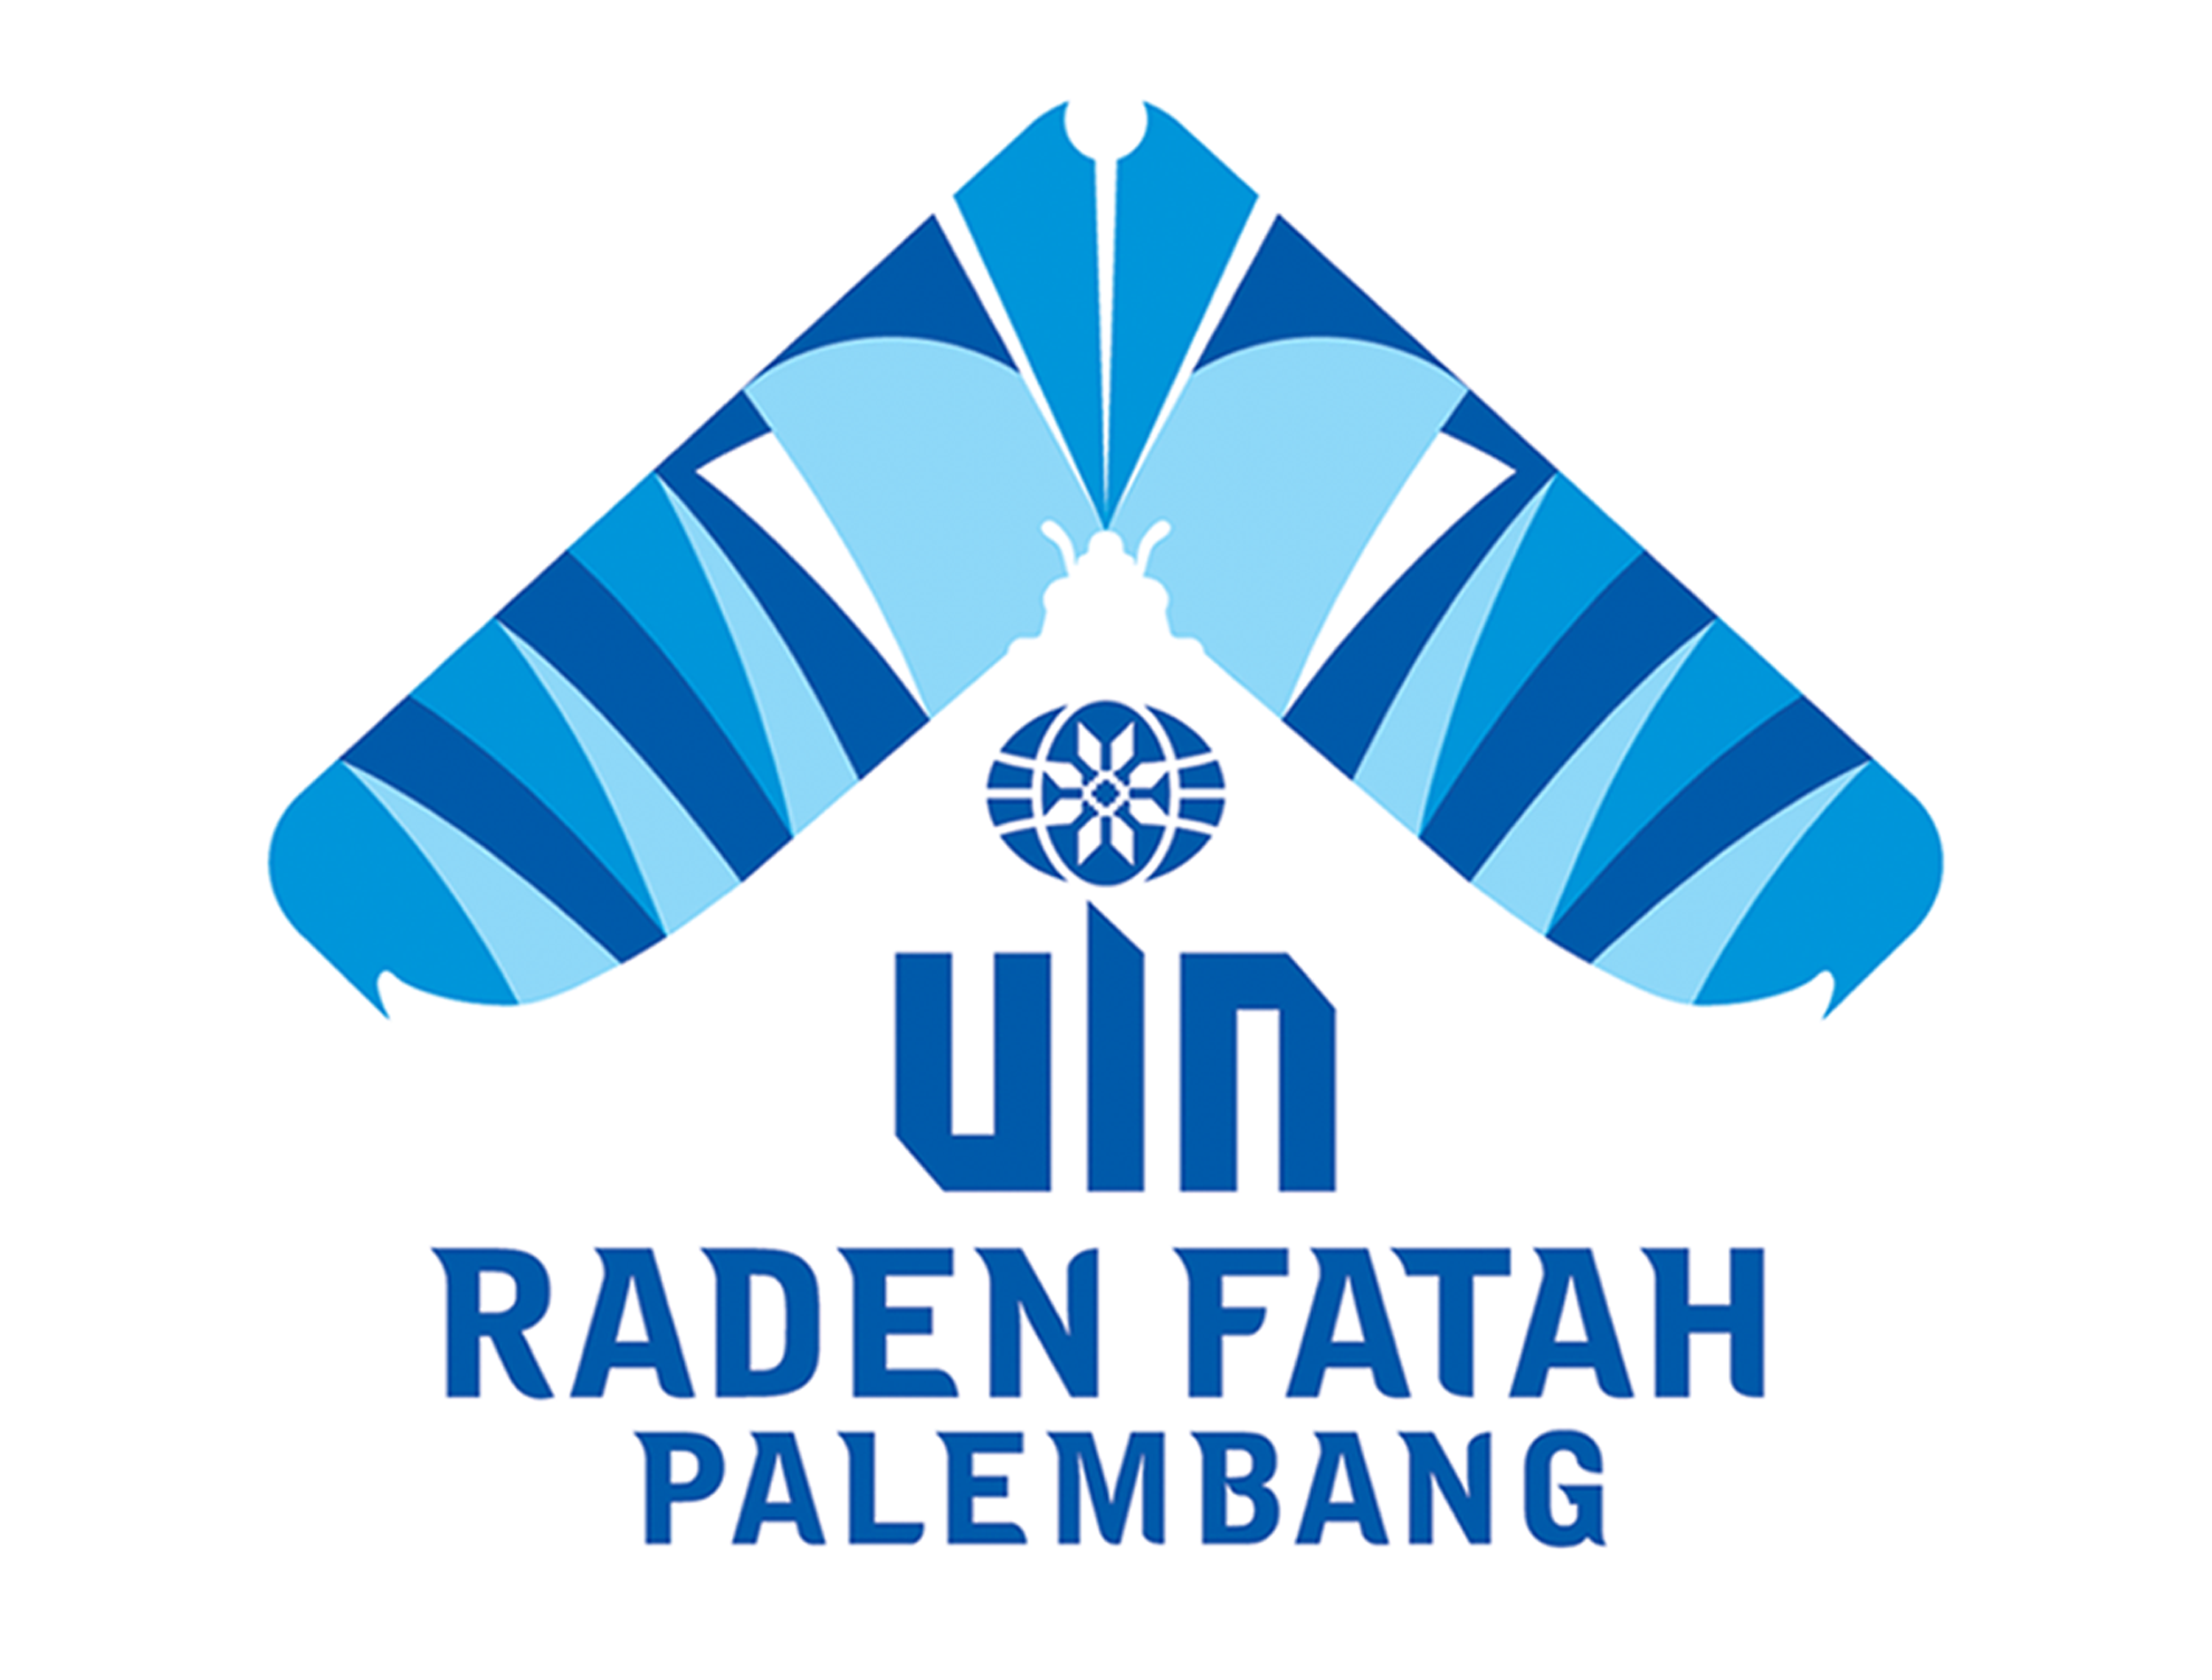 Universitas Islam Negeri Raden Fatah Palembang